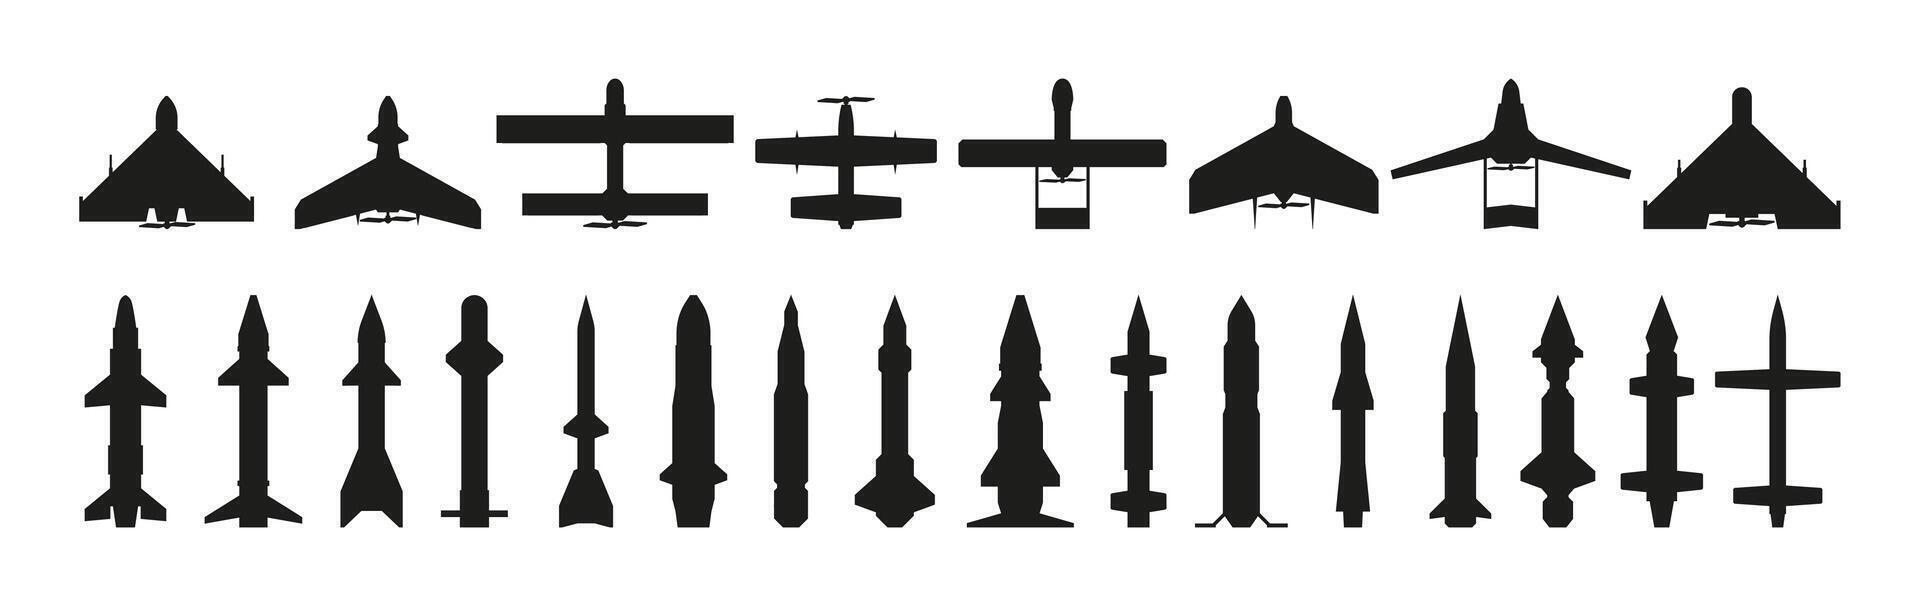 misiles silueta. militar guiado aeronave arma con ojivas, negro Ejército munición, volador explosivo misil plano estilo. vector aislado colección